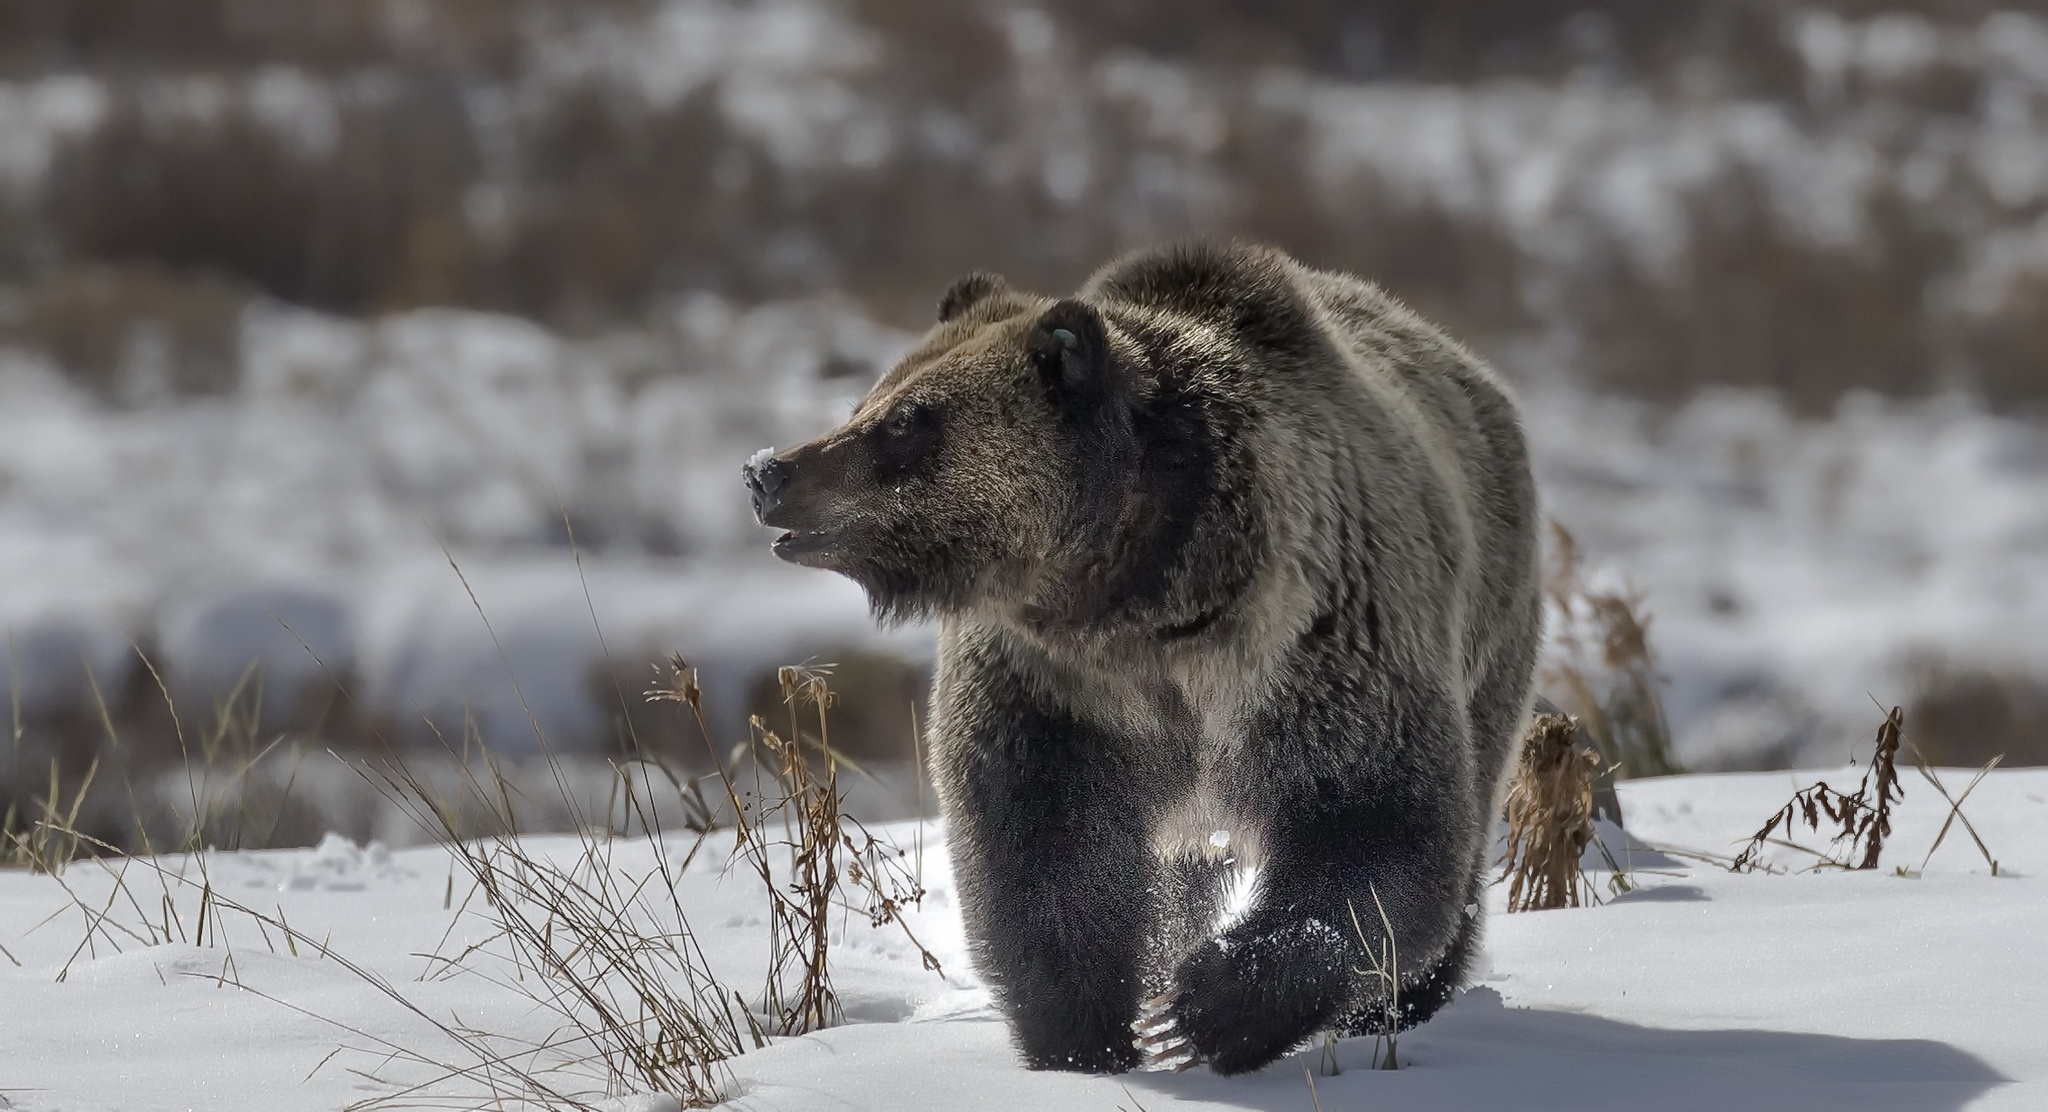 Скачать обои бесплатно Животные, Зима, Снег, Медведи, Медведь картинка на рабочий стол ПК